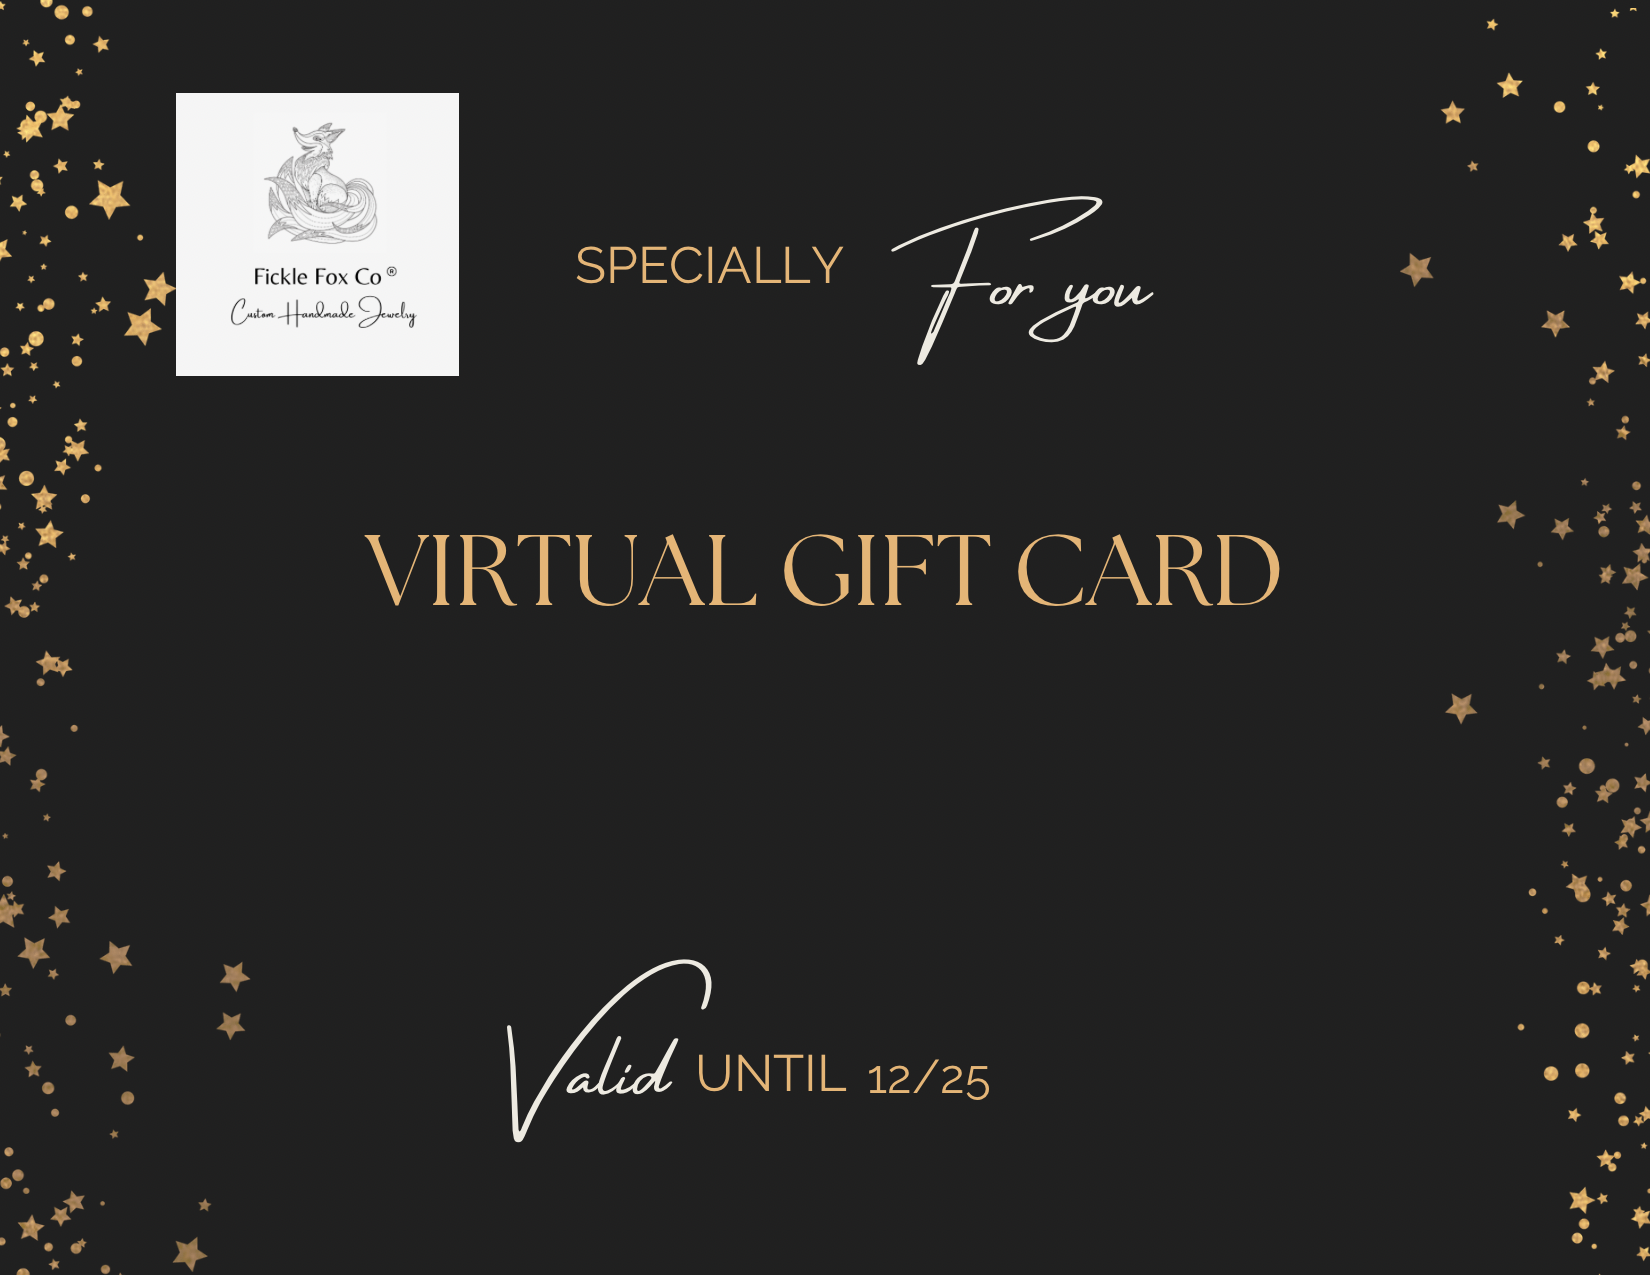 Fickle Fox Co Virtual Gift Card